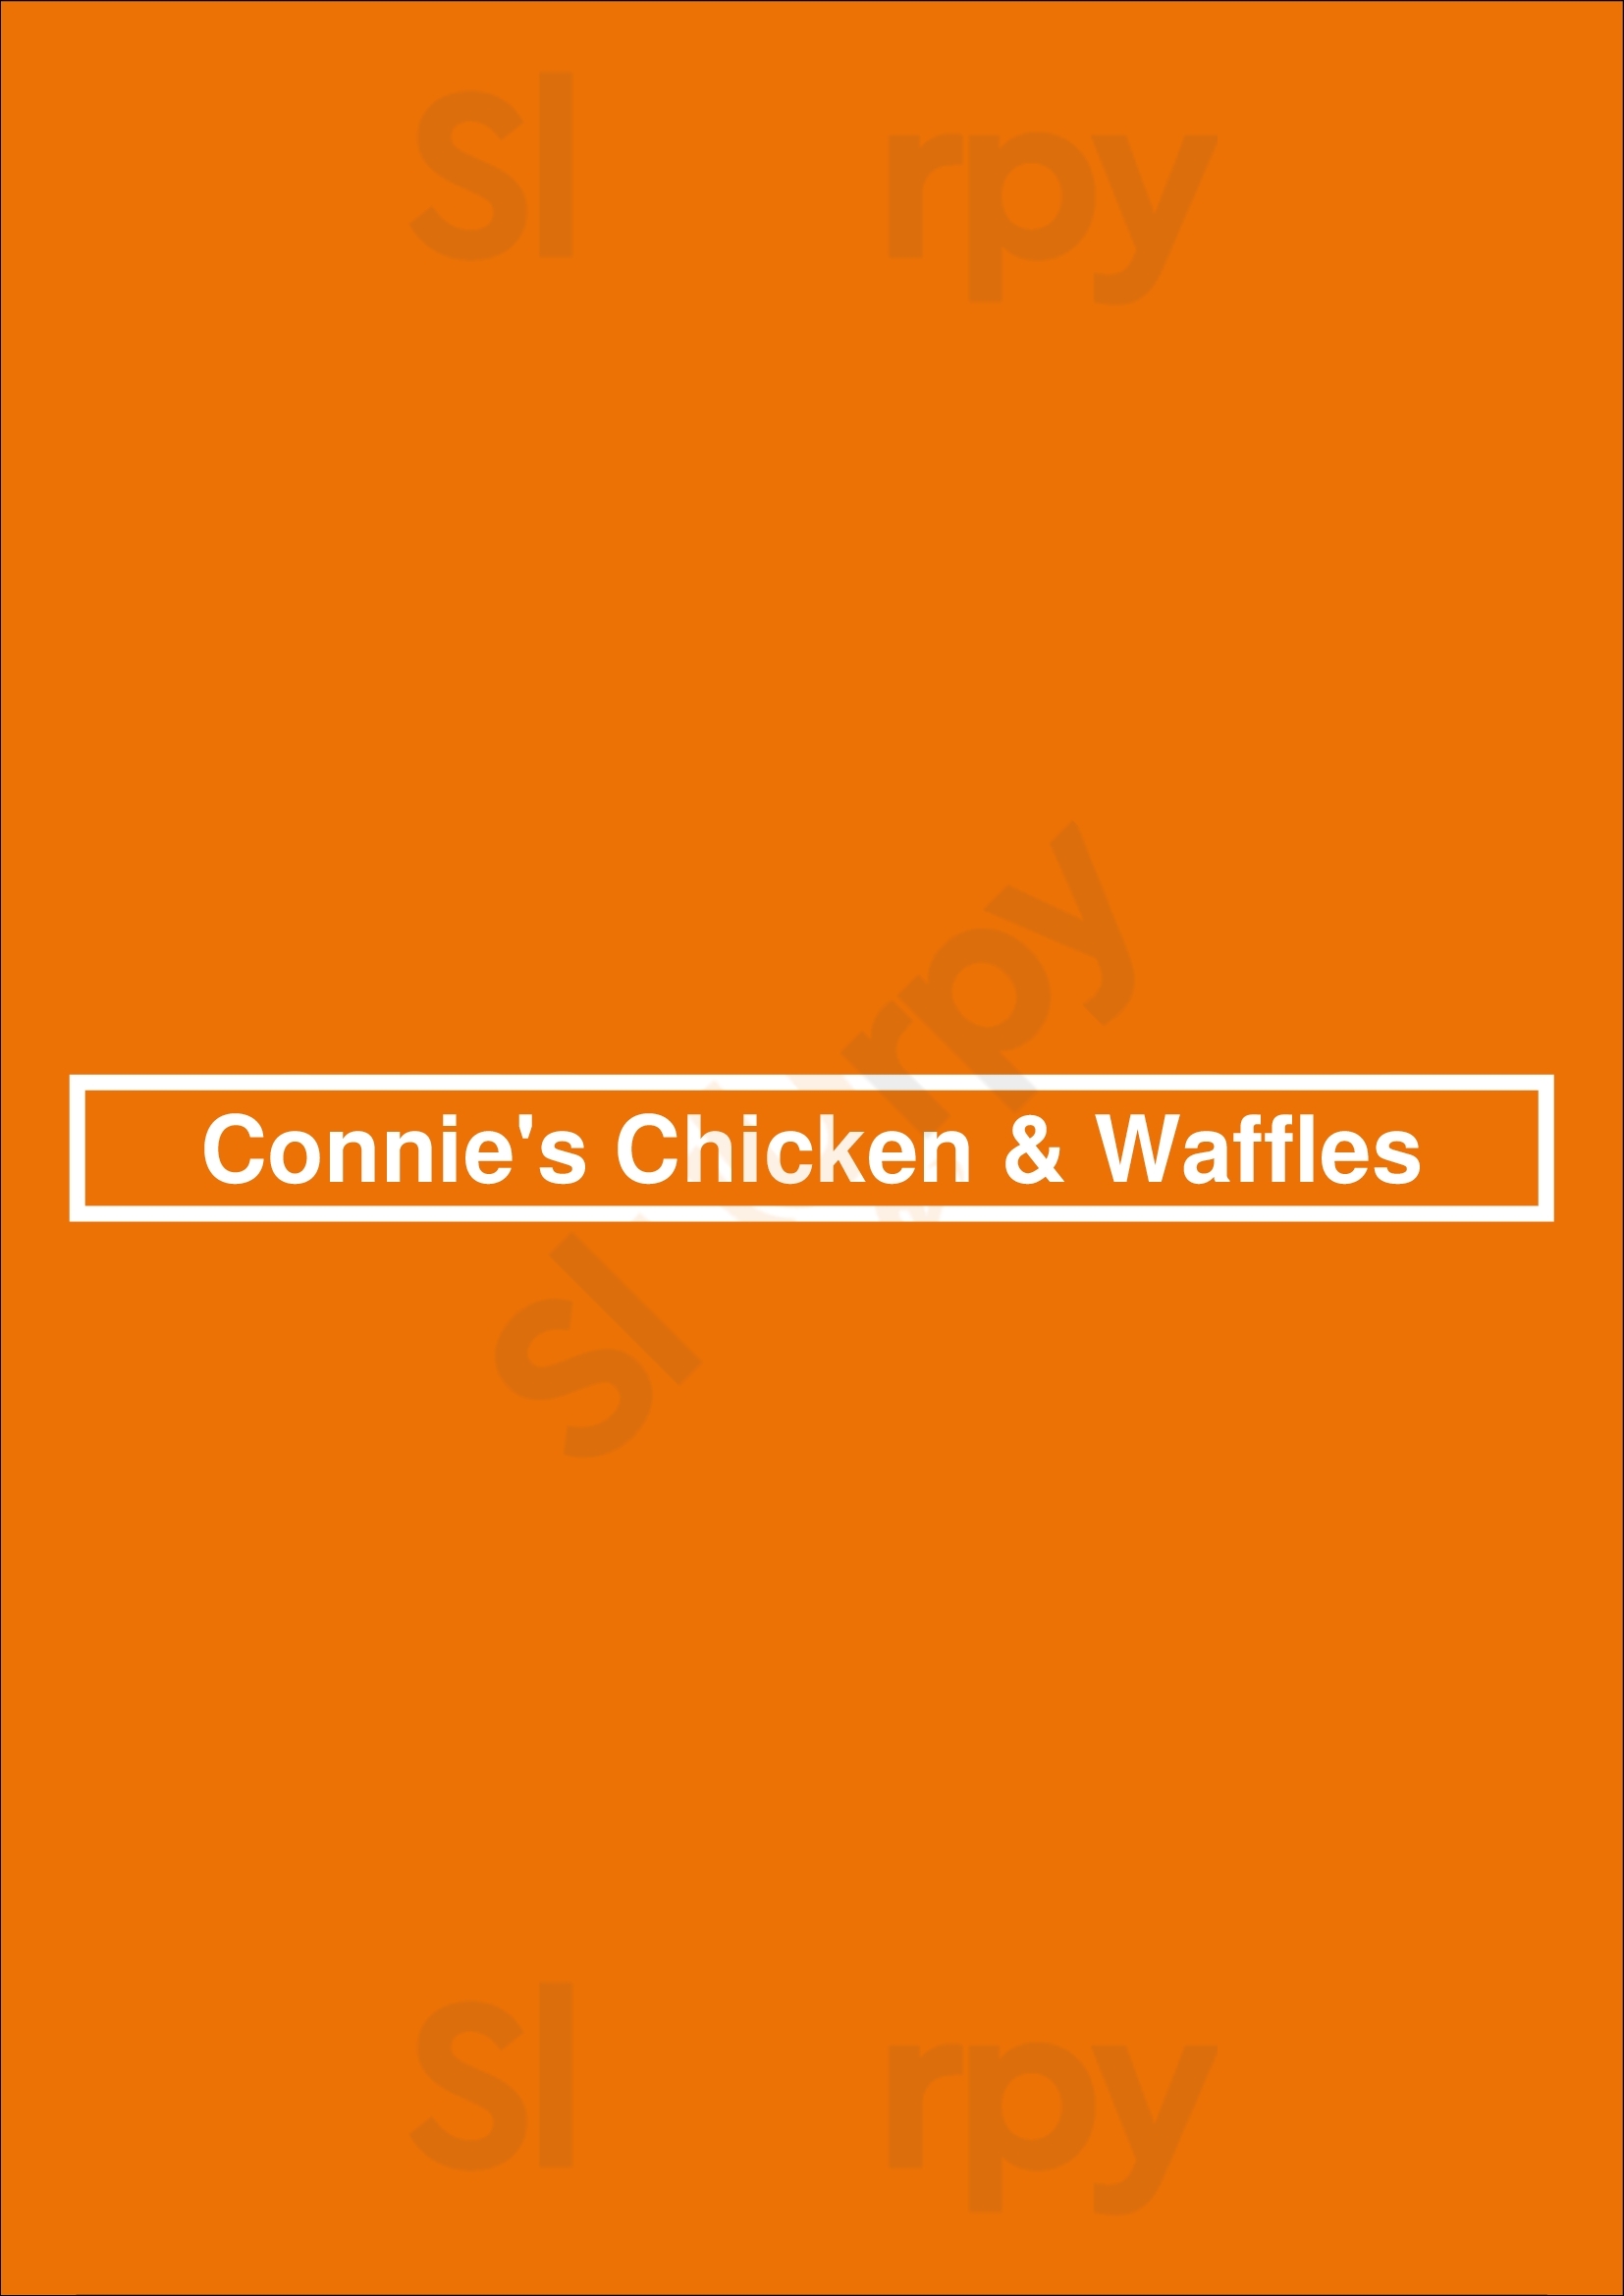 Connie's Chicken & Waffles Baltimore Menu - 1